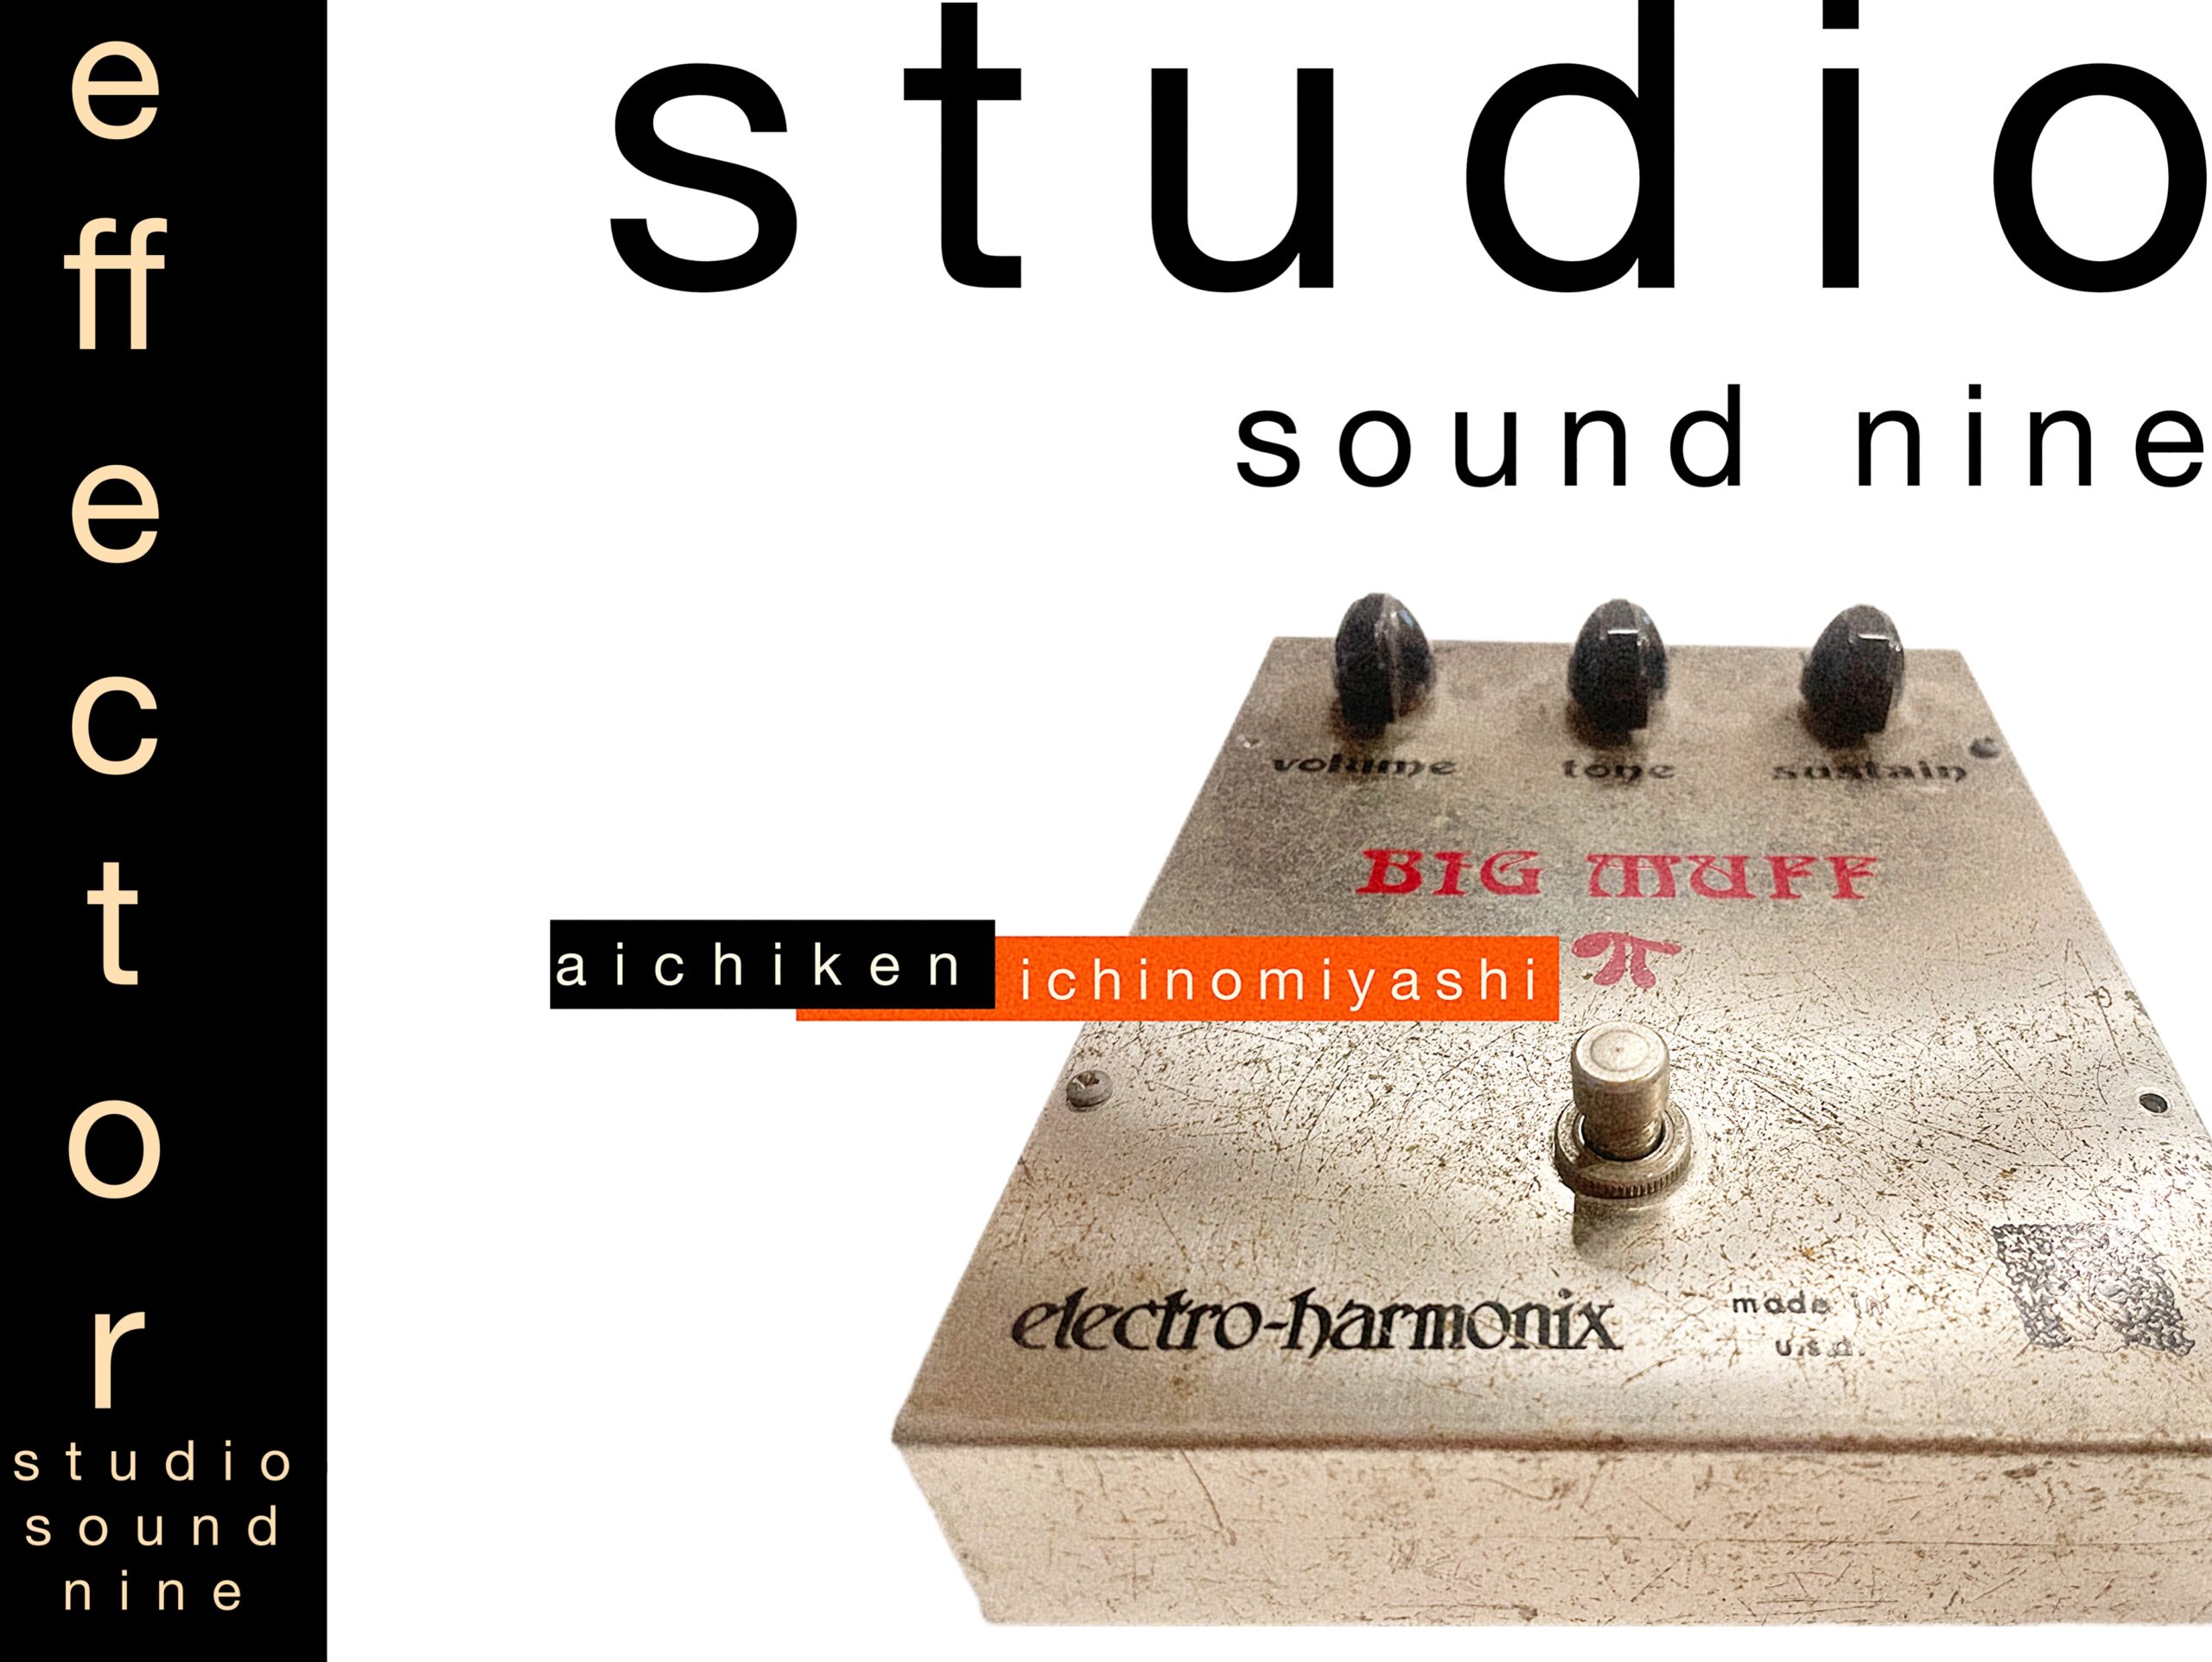 ラムズヘッド/effector | STUDIO SOUND NINE | スタジオ サウンドナイン